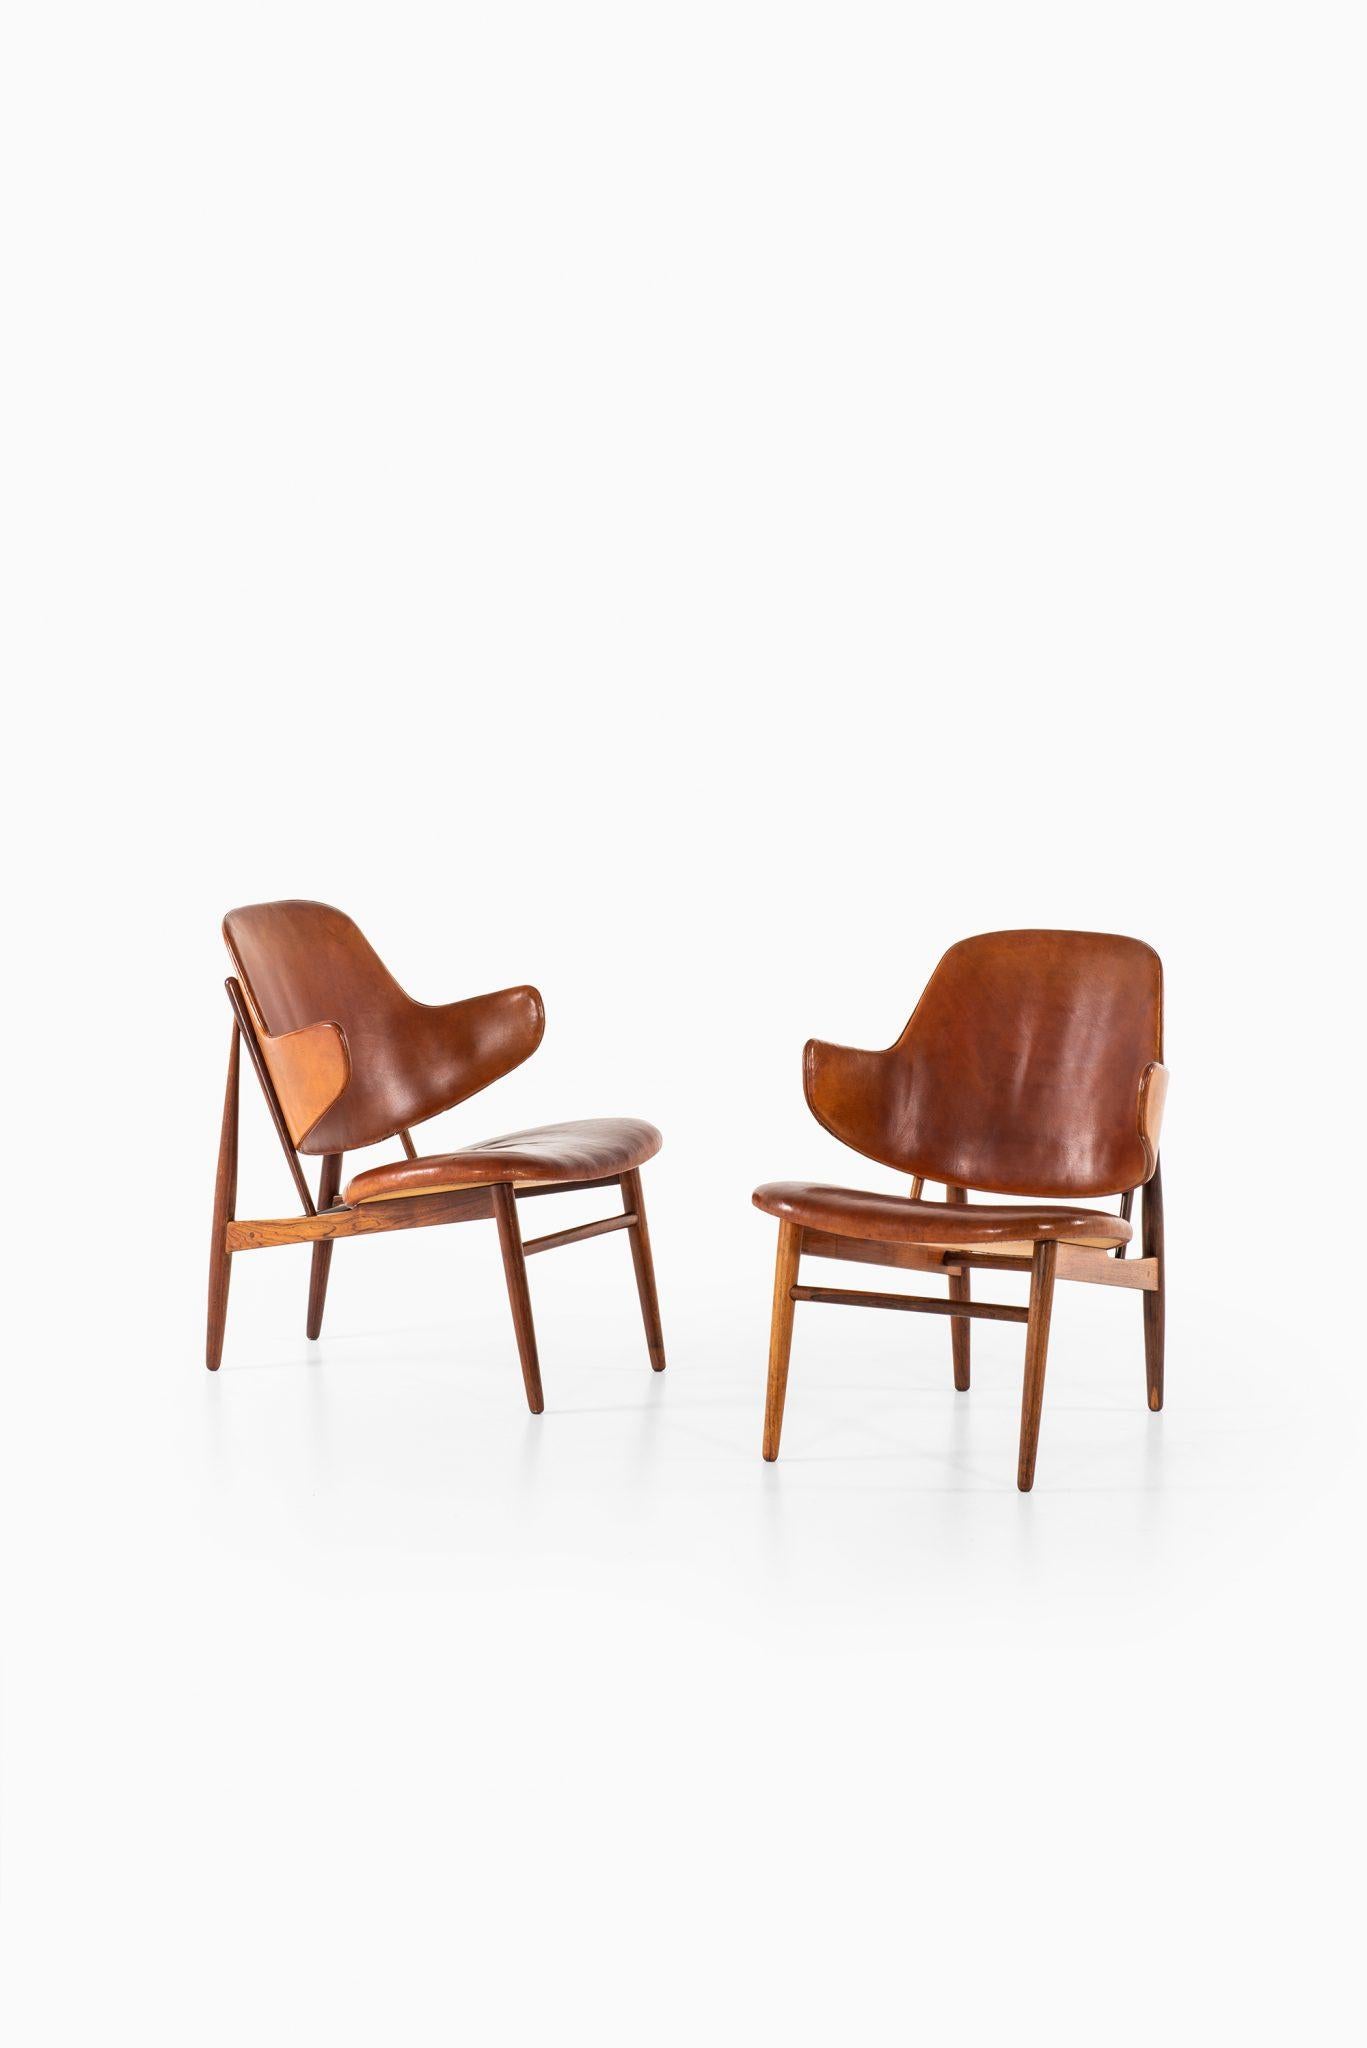 Ib Kofod-Larsen Easy Chairs Model DP 9 by Christensen & Larsen in Denmark 1